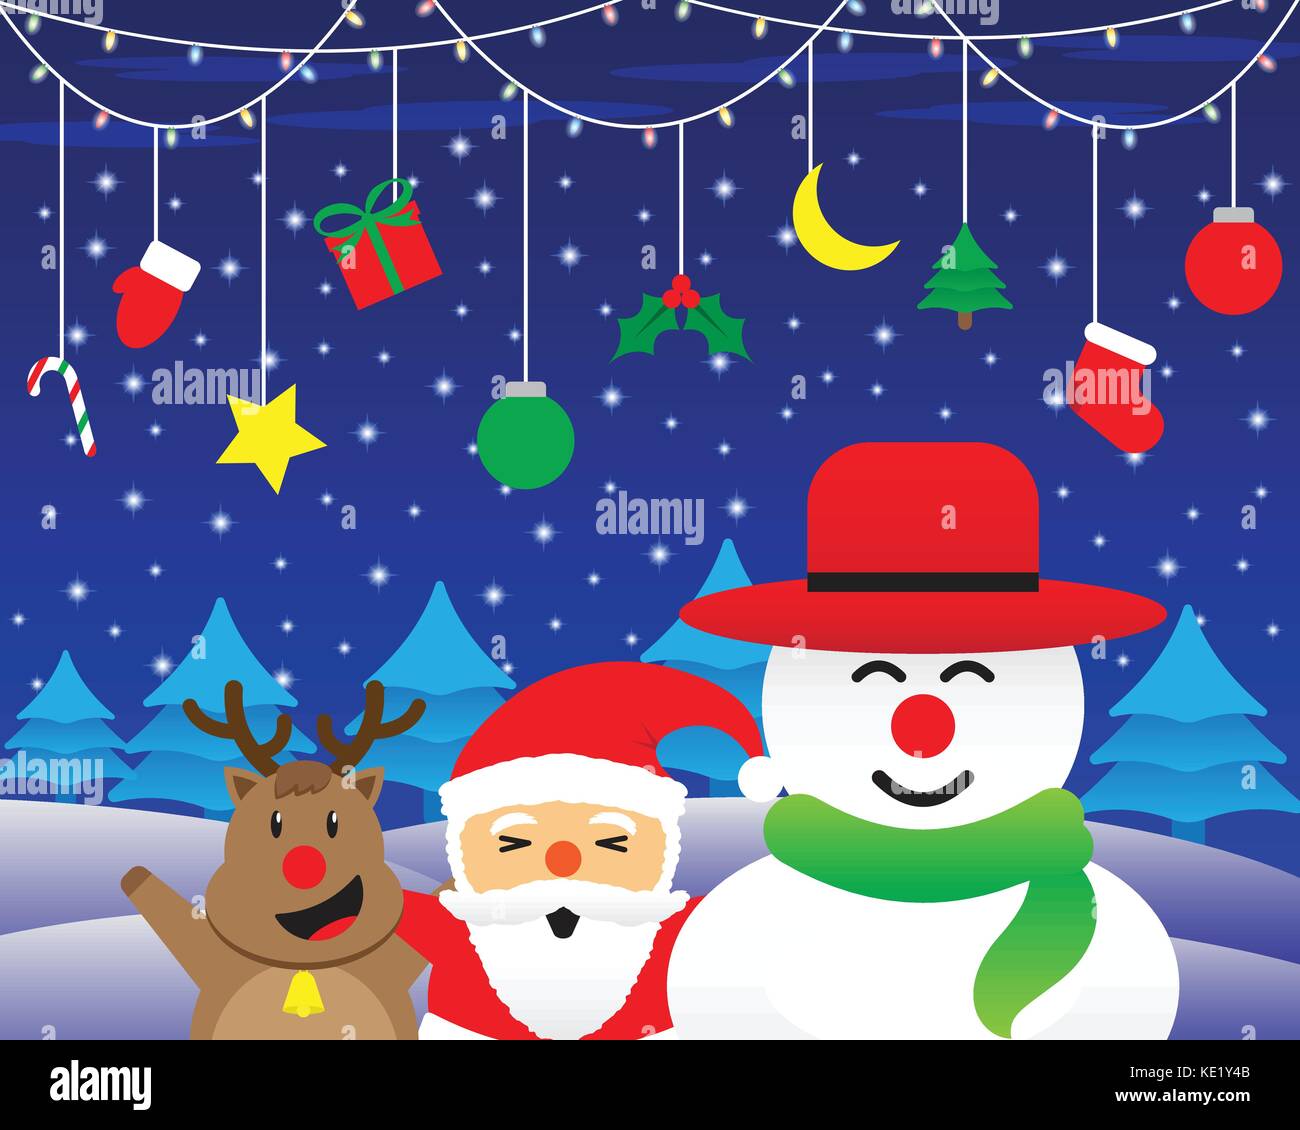 Buon Natale, carino di renne, paffuto santa claus, e paffuto pupazzo è felicemente in piedi sotto la luce di natale ed appendere degli animali sulla neve di notte Illustrazione Vettoriale